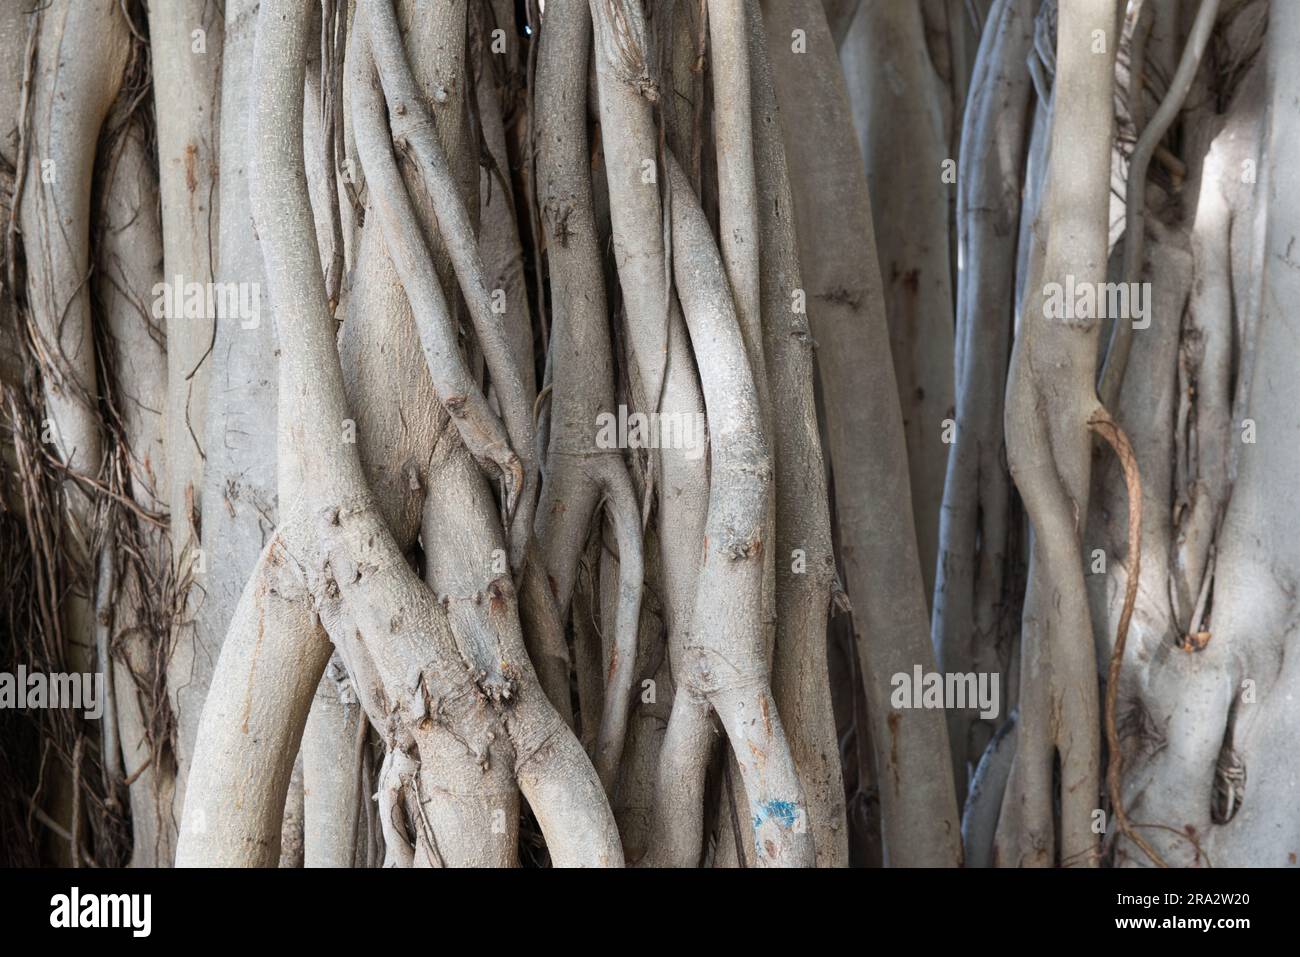 Ein Blick aus nächster Nähe auf verschiedene Wurzeln, die eher wie Zweige eines hawaiianischen Banyan-T-Shirts in einem Honolulu Park aussehen. Stockfoto